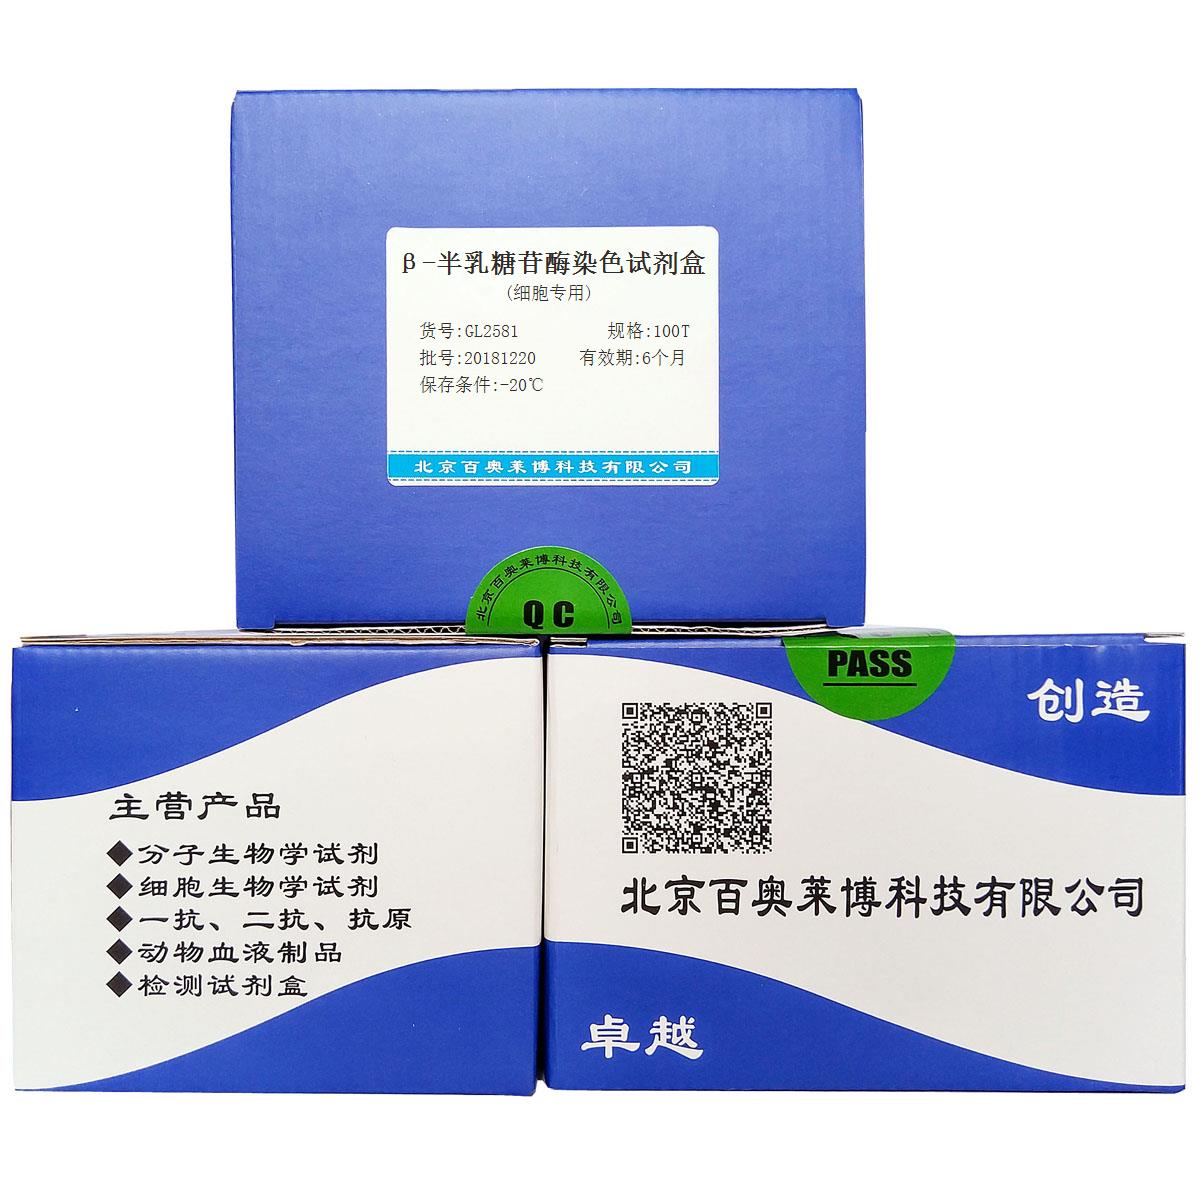 β-半乳糖苷酶染色试剂盒(细胞专用)